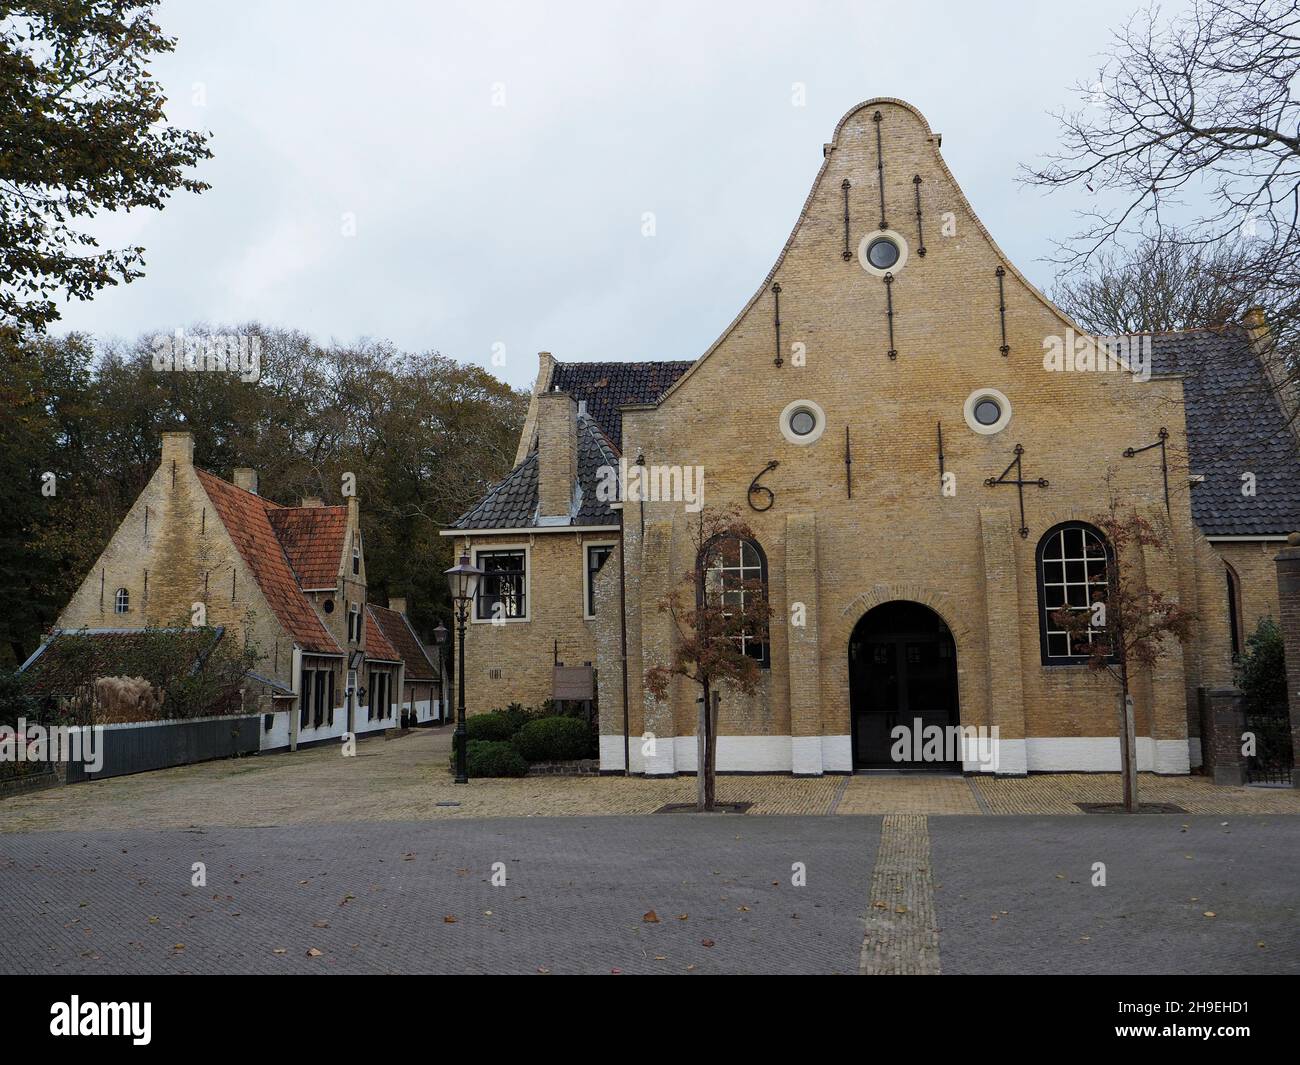 Iglesia histórica y edificios en la aldea de Oost-Vlieland, isla de Vlieland, Países Bajos. La iglesia fue construida en 1605, modificada en 1647. Foto de stock